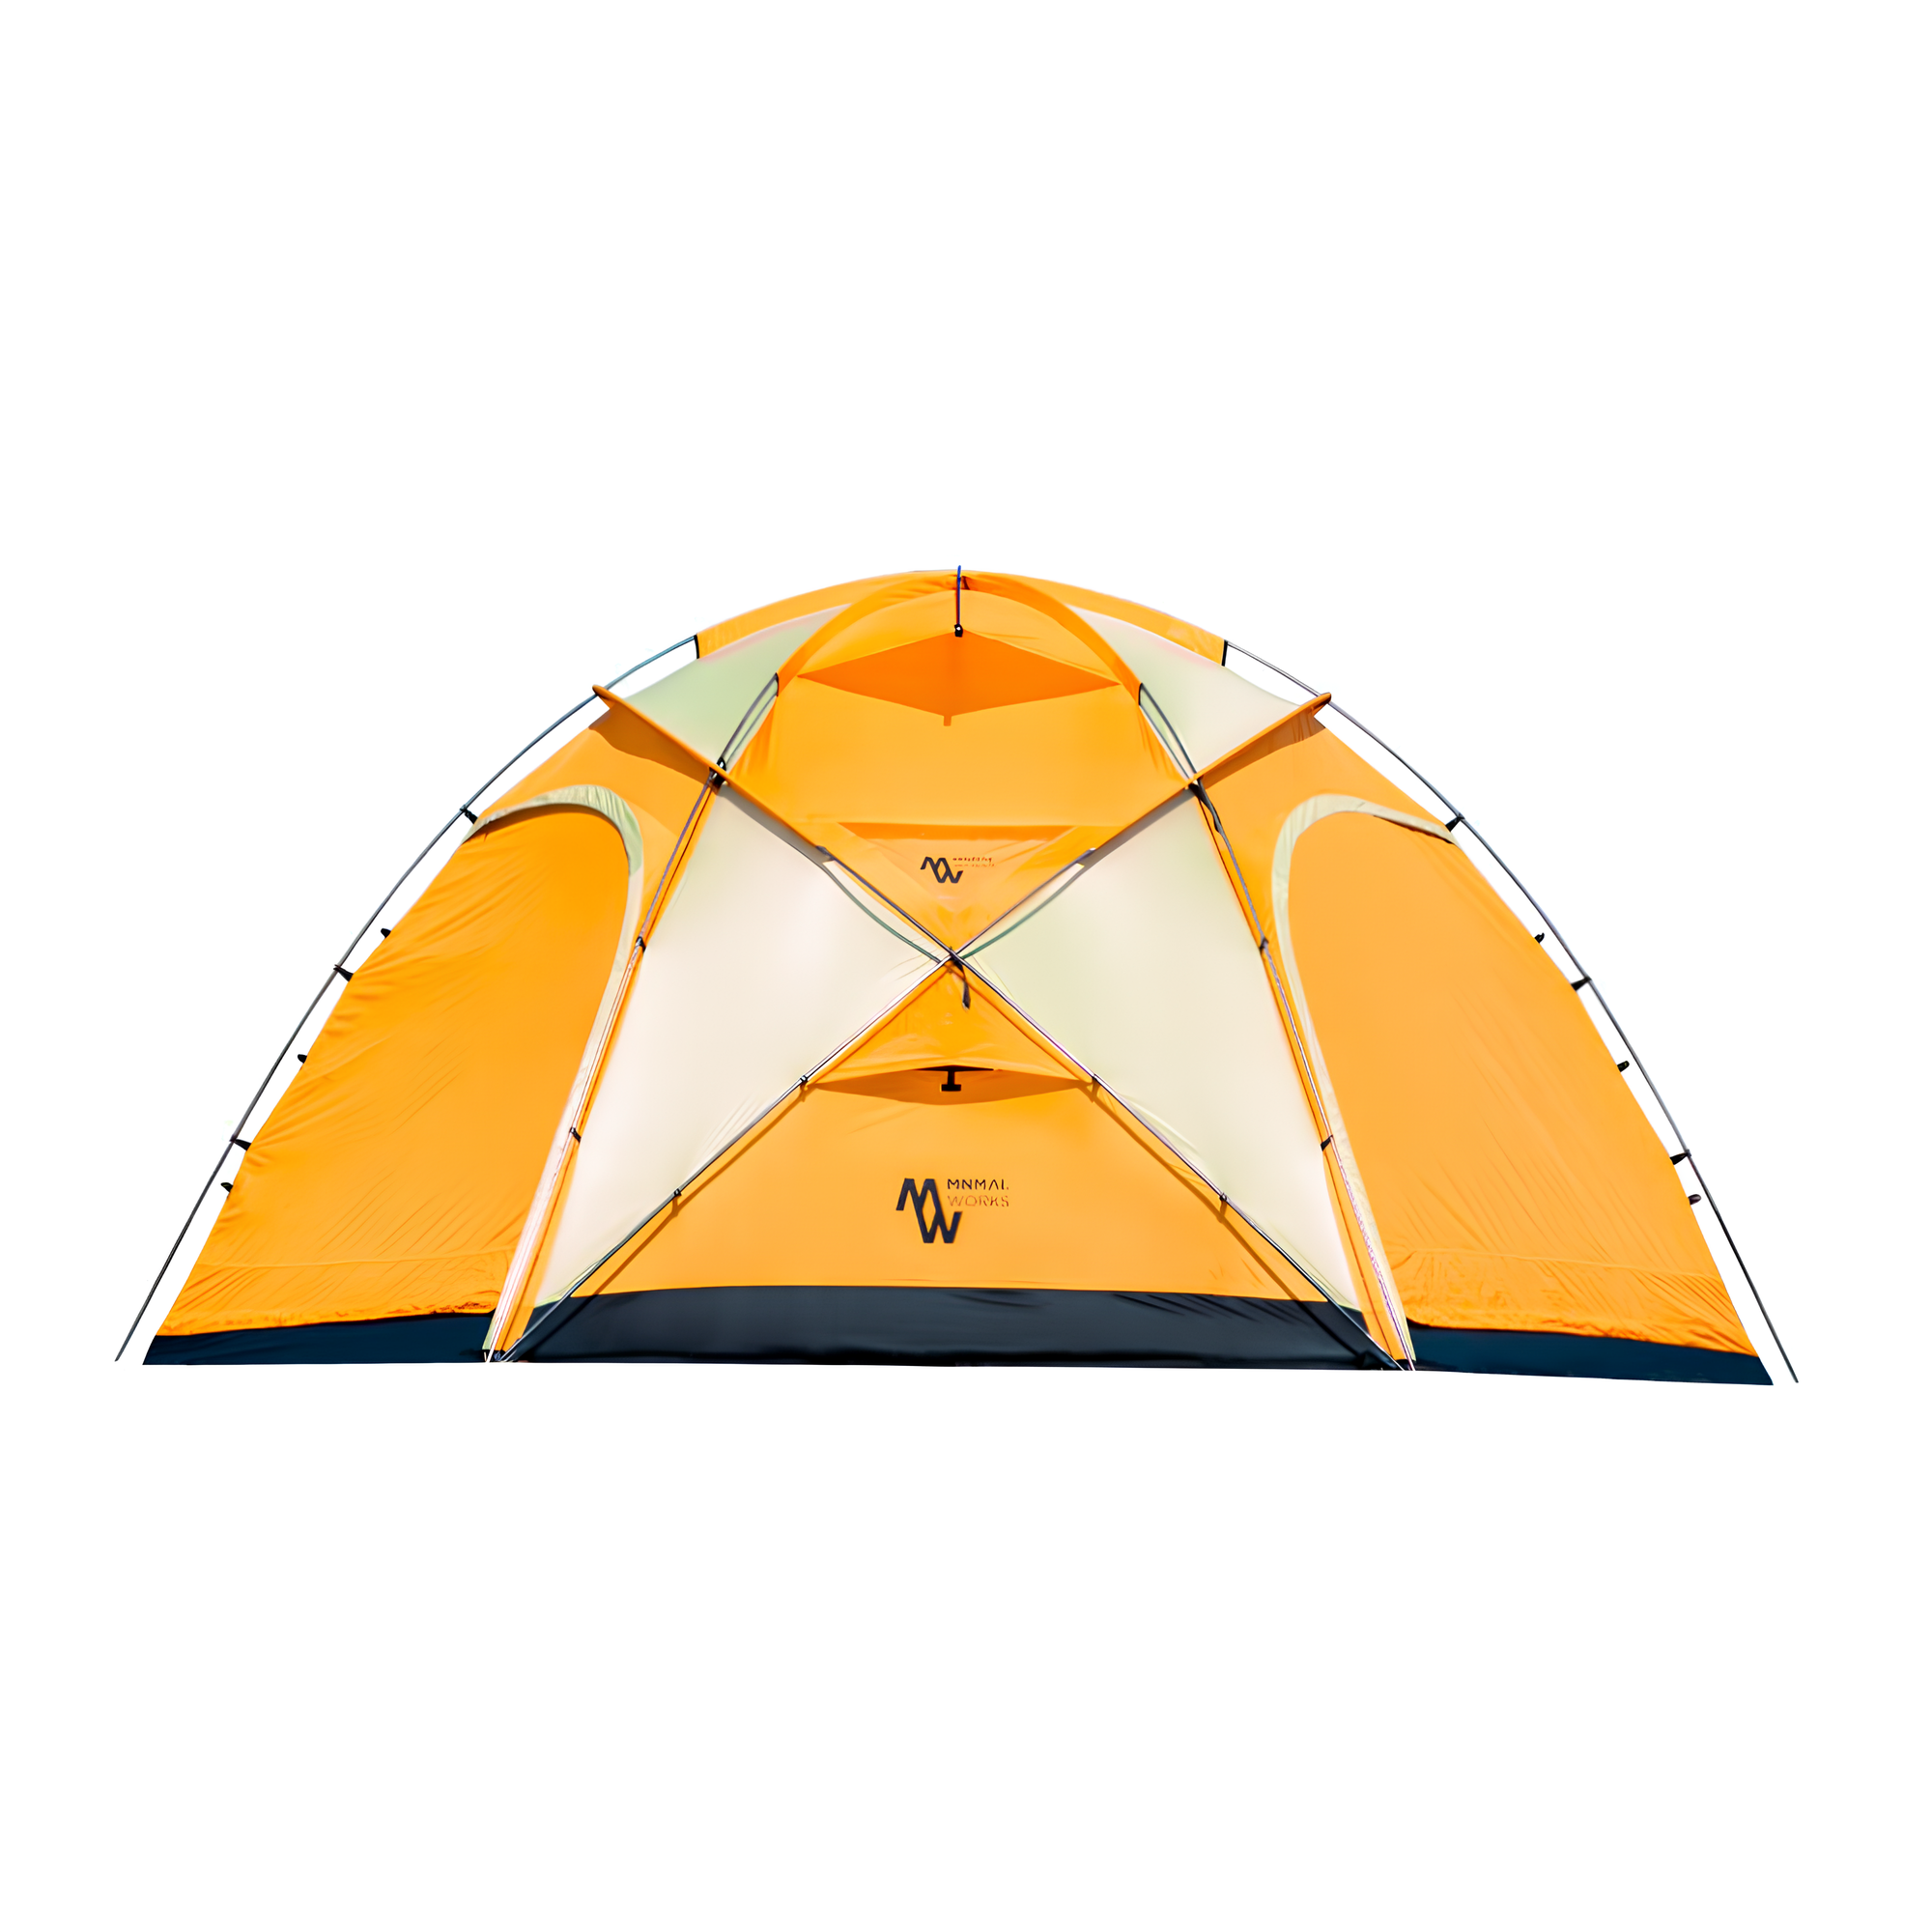 미니멀웍스 캠핑 텐트 망고스테이션 플러스 오렌지 수납가방 세트